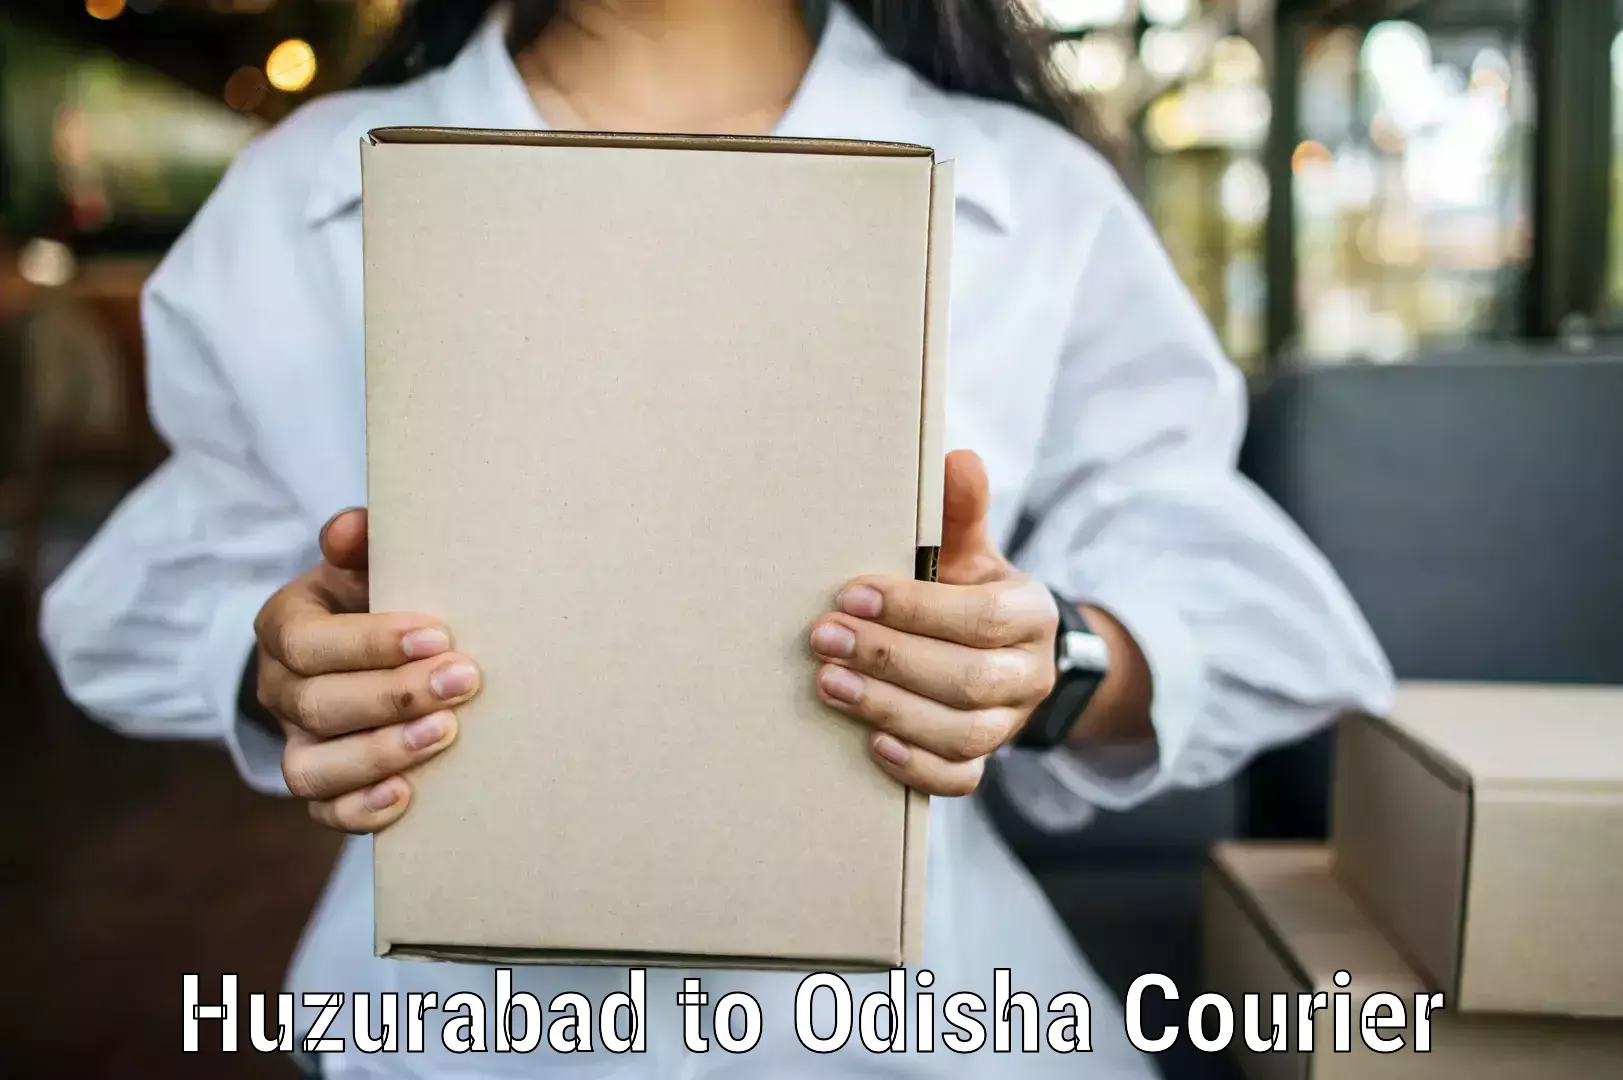 Supply chain efficiency Huzurabad to Odisha